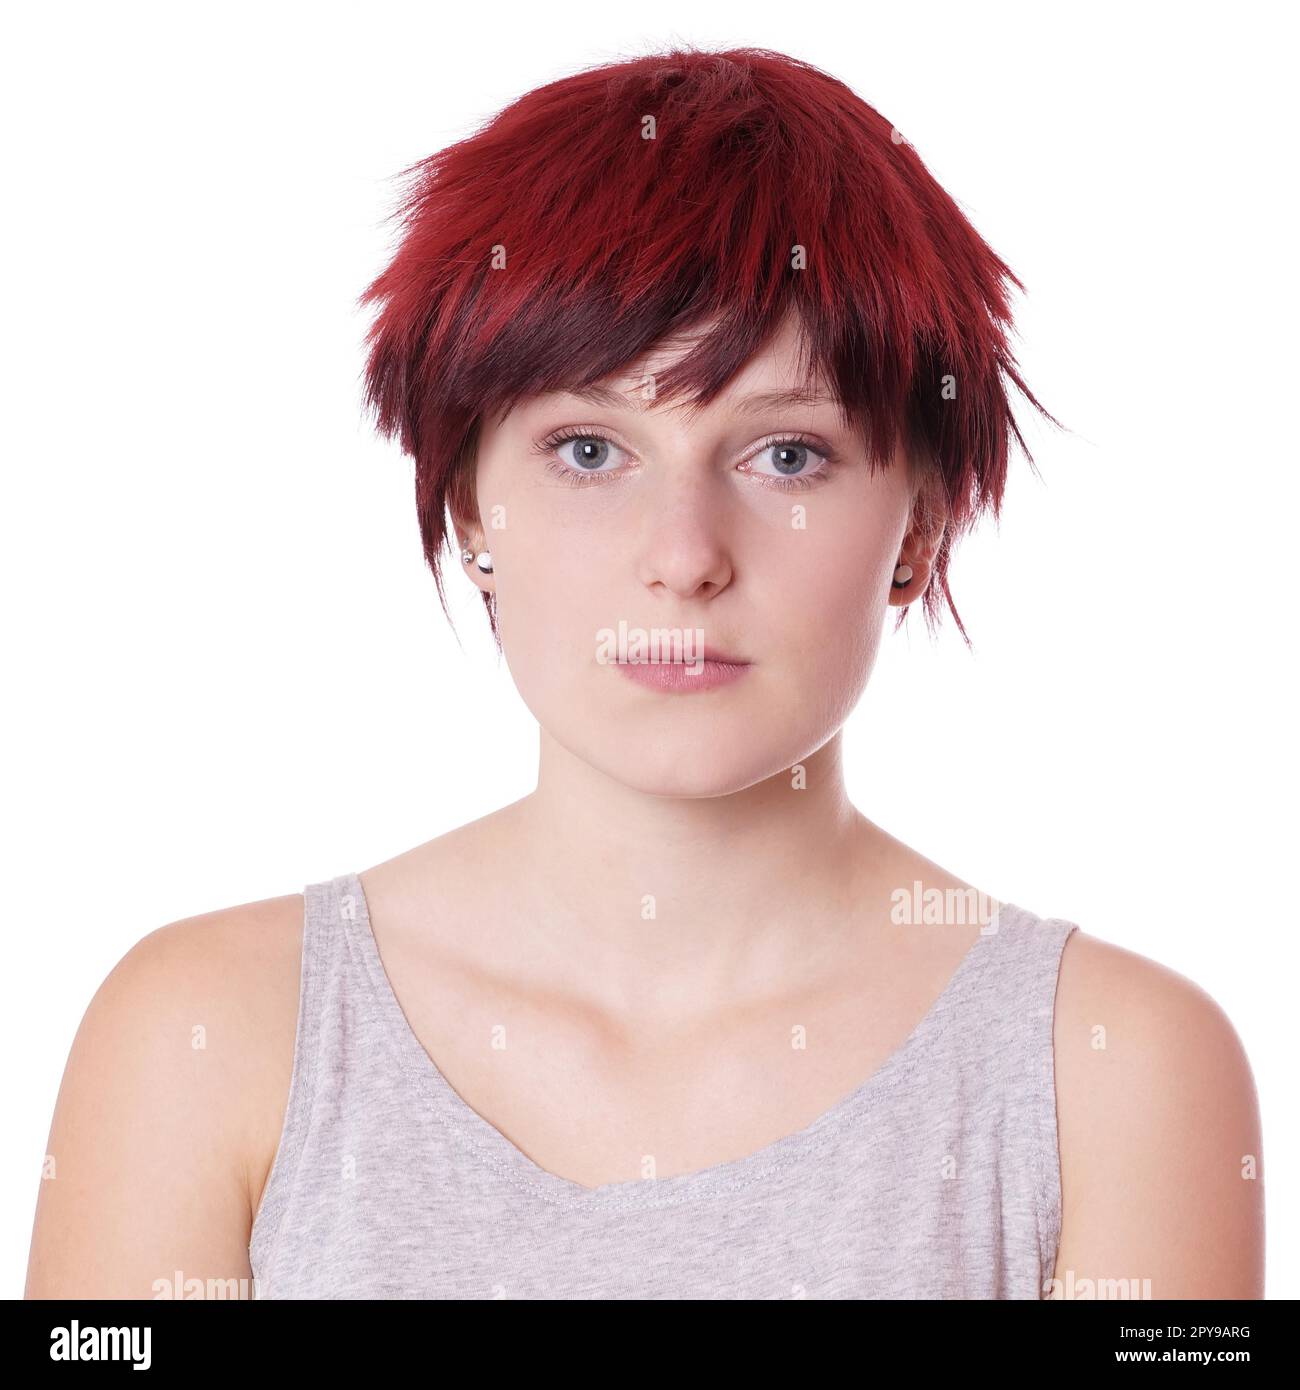 giovane donna con taglio a capelli corti ragazzo ed espressione neutra Foto Stock